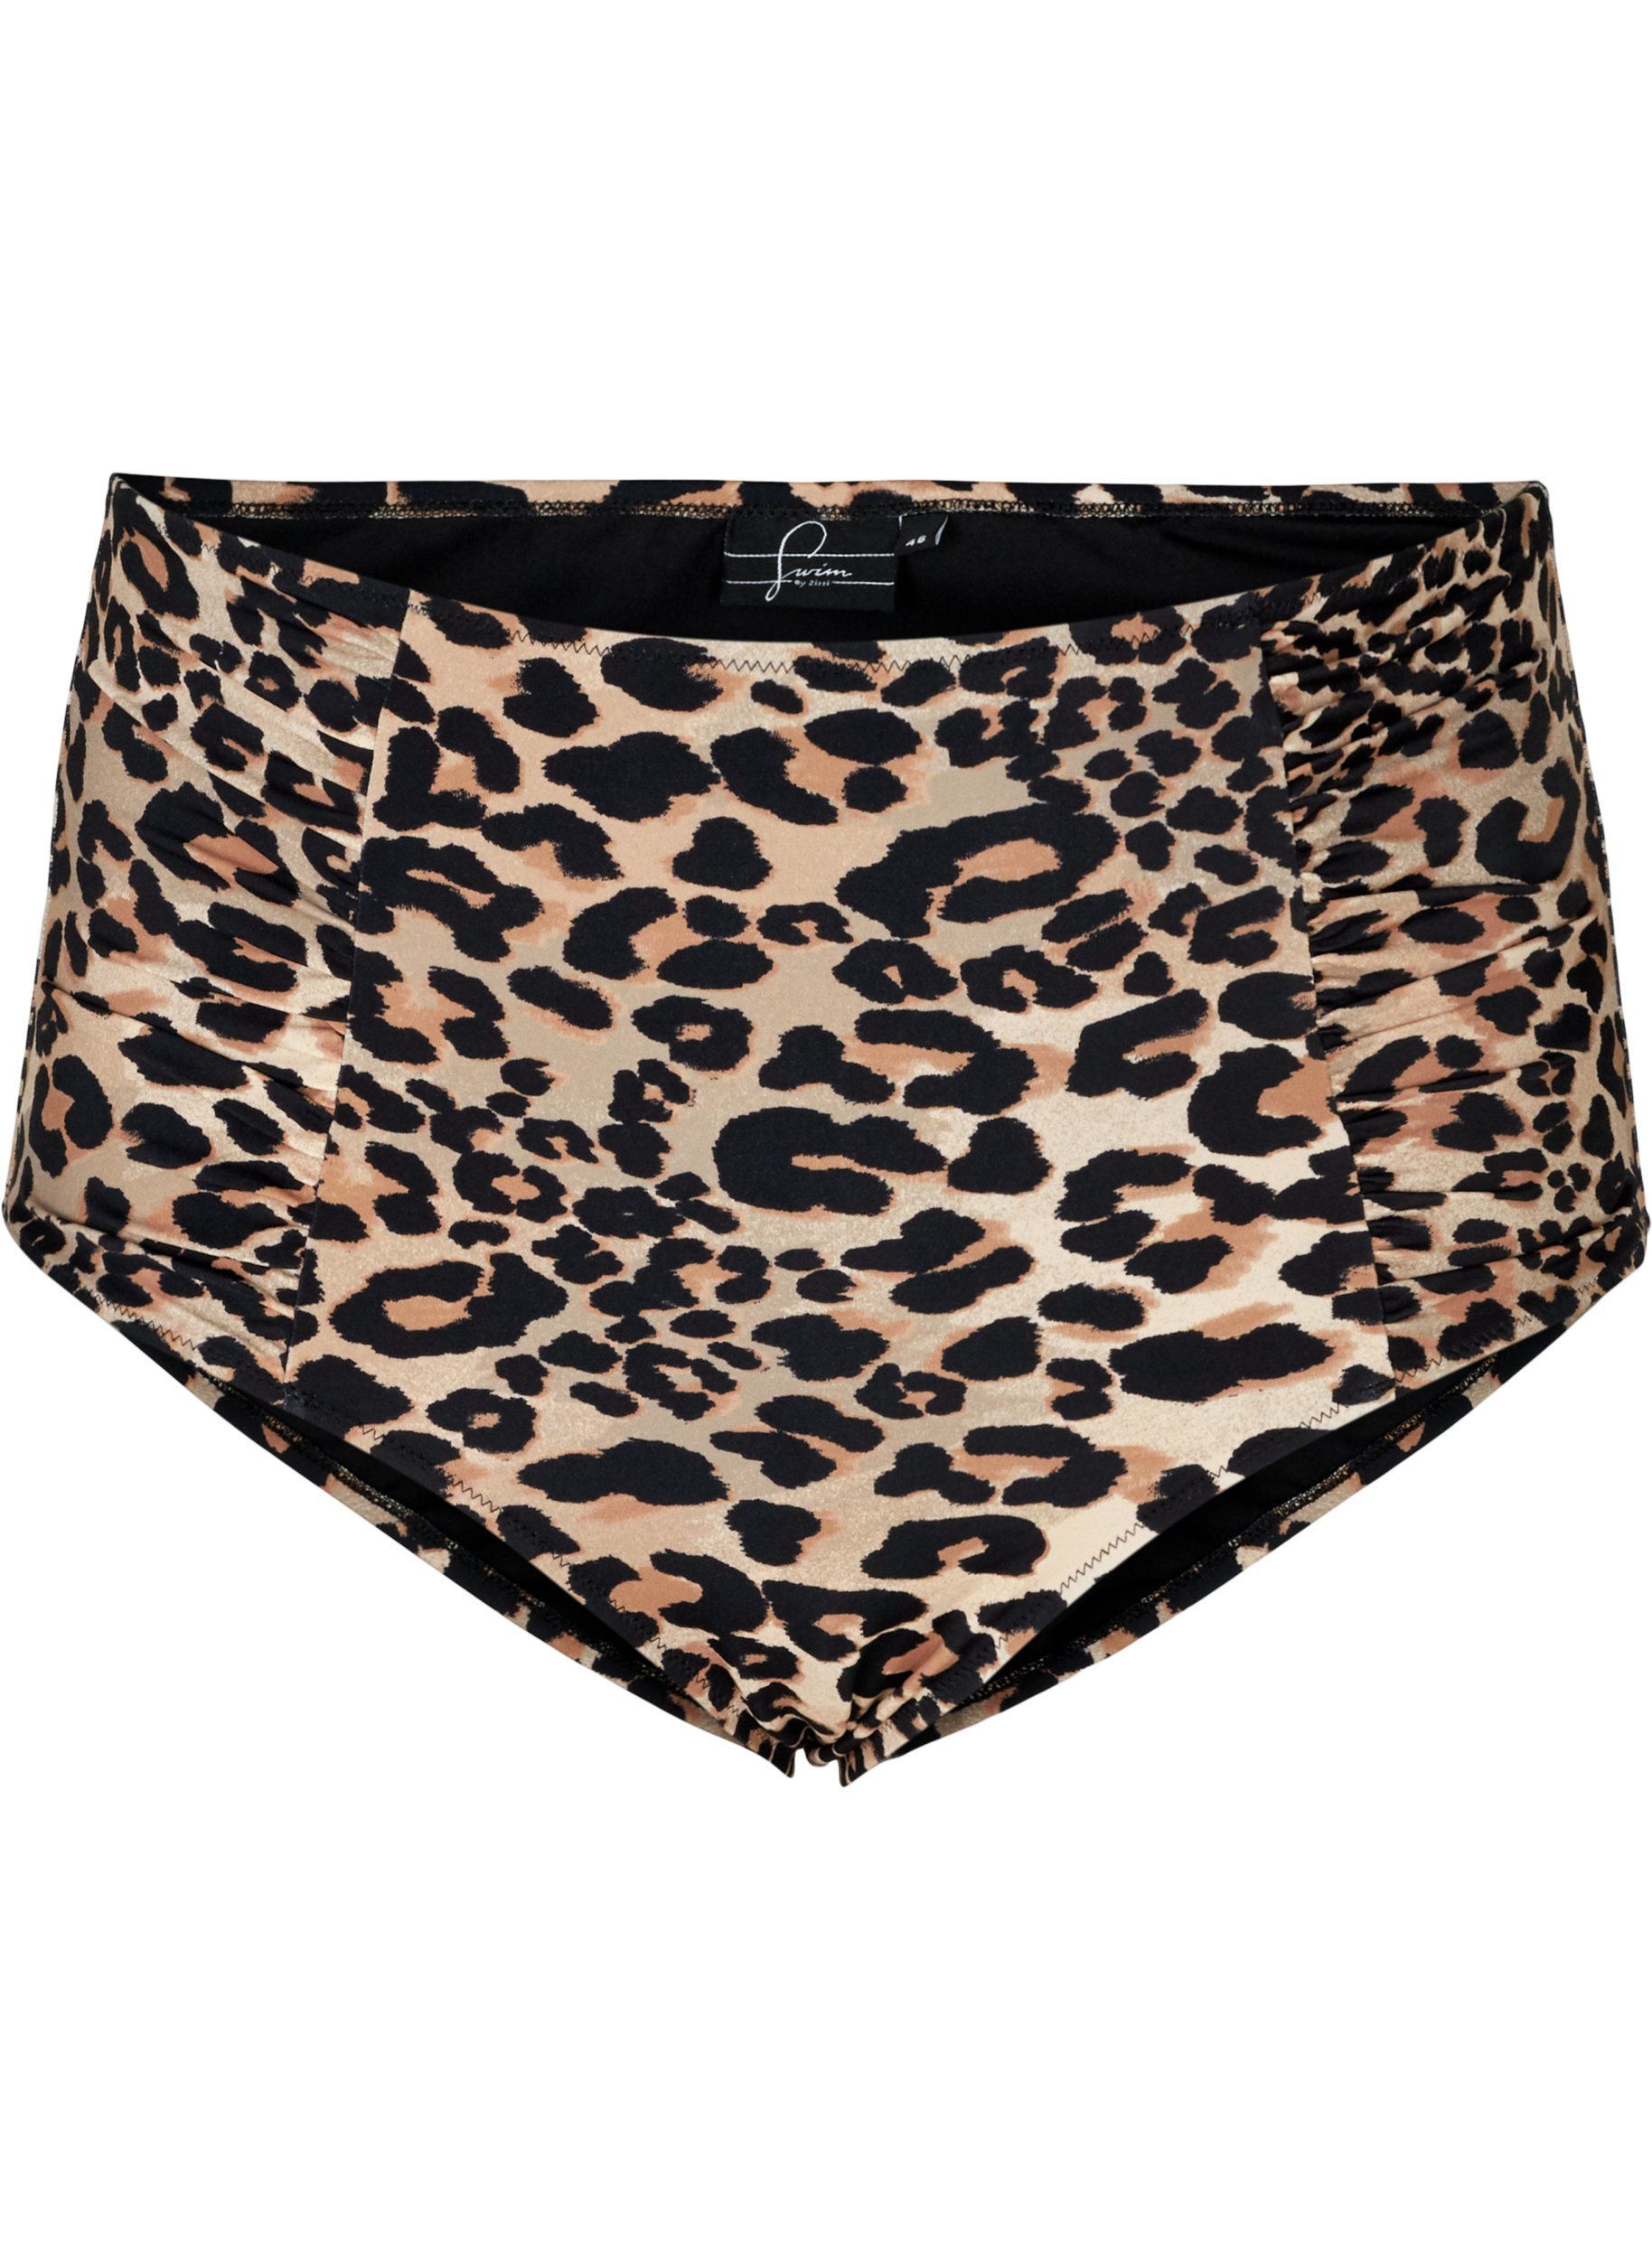 Bikinitruse med leopardmønster og høyt liv, Leopard Print